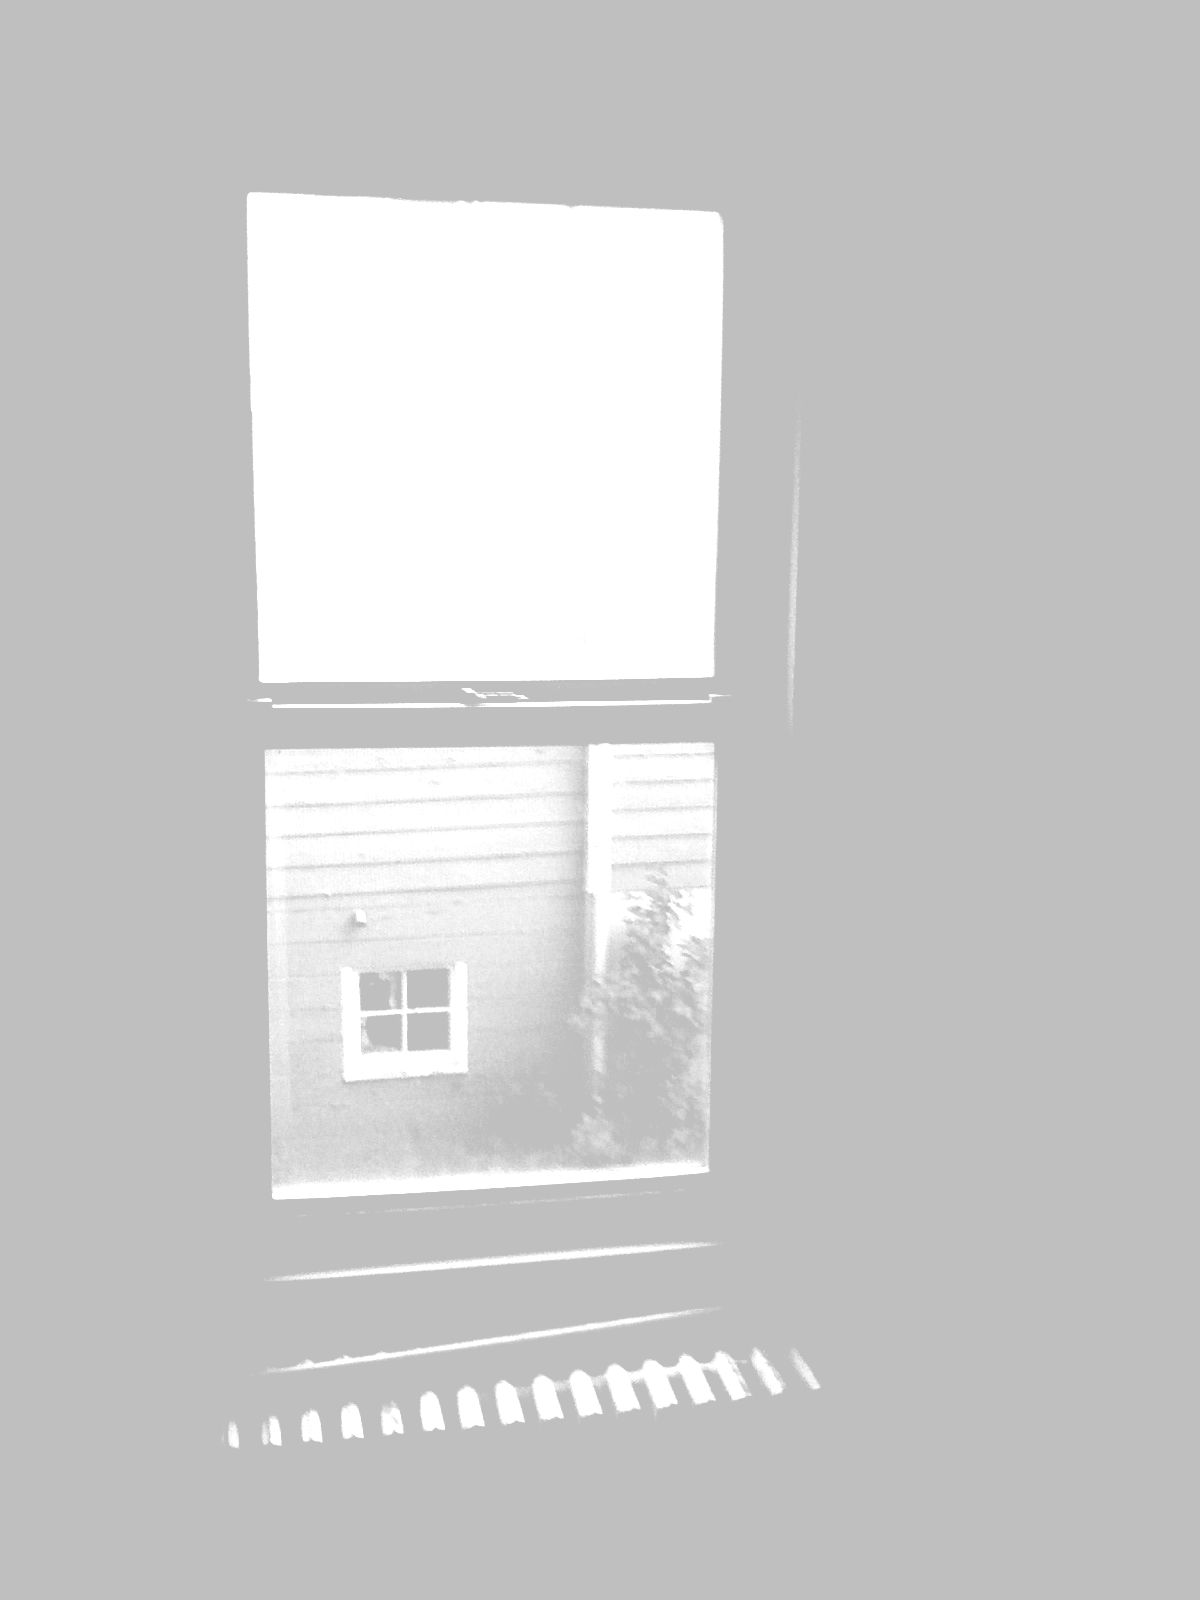 Scenes From My New House:  2 Window, House Next Door